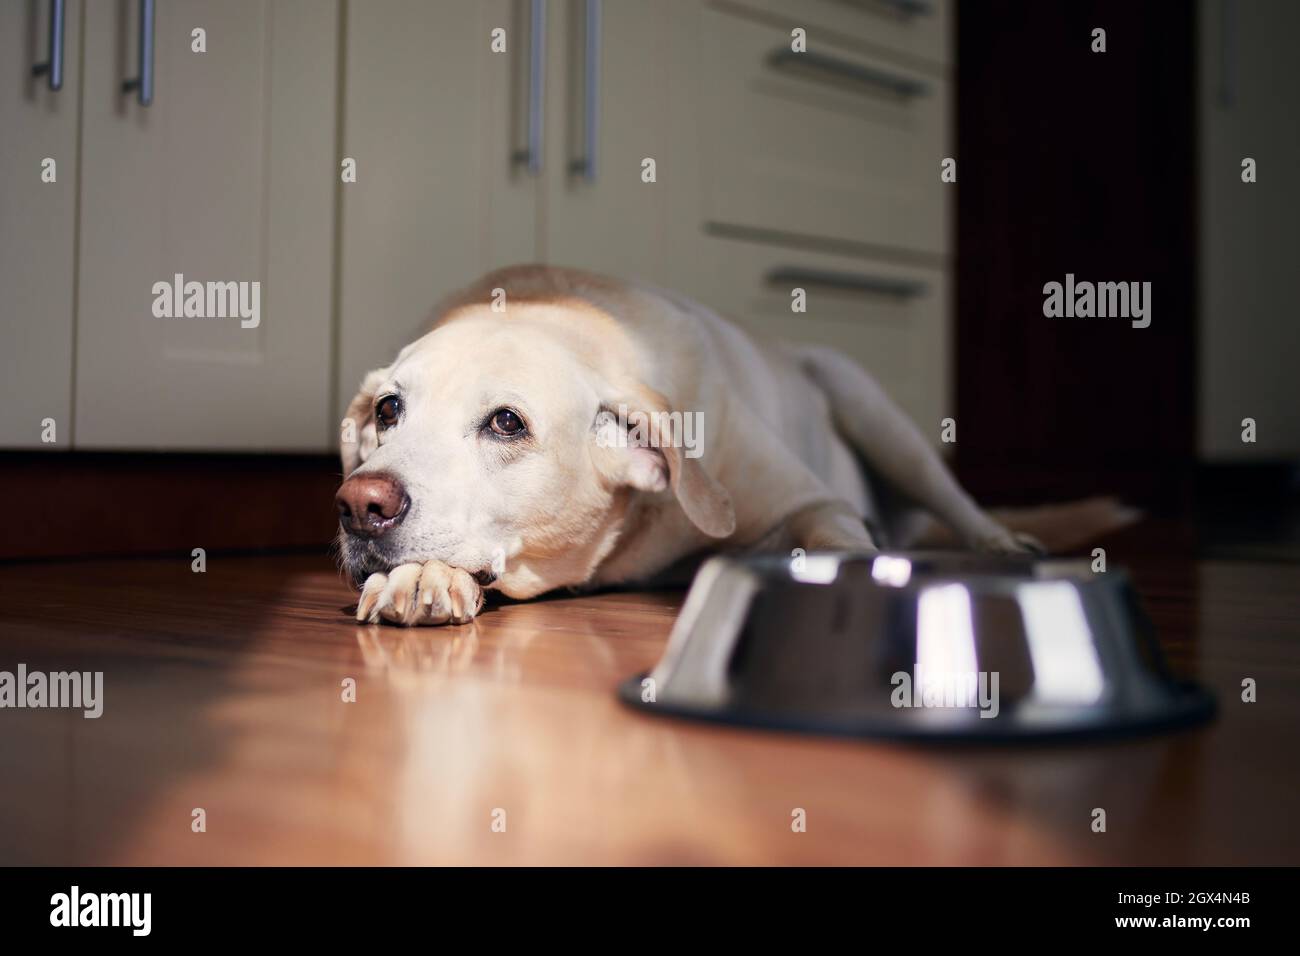 Hund mit traurigen Augen wartet auf Fütterung. Der alte labrador Retriever liegt in der Nähe einer leeren Schüssel in der heimischen Küche. Stockfoto